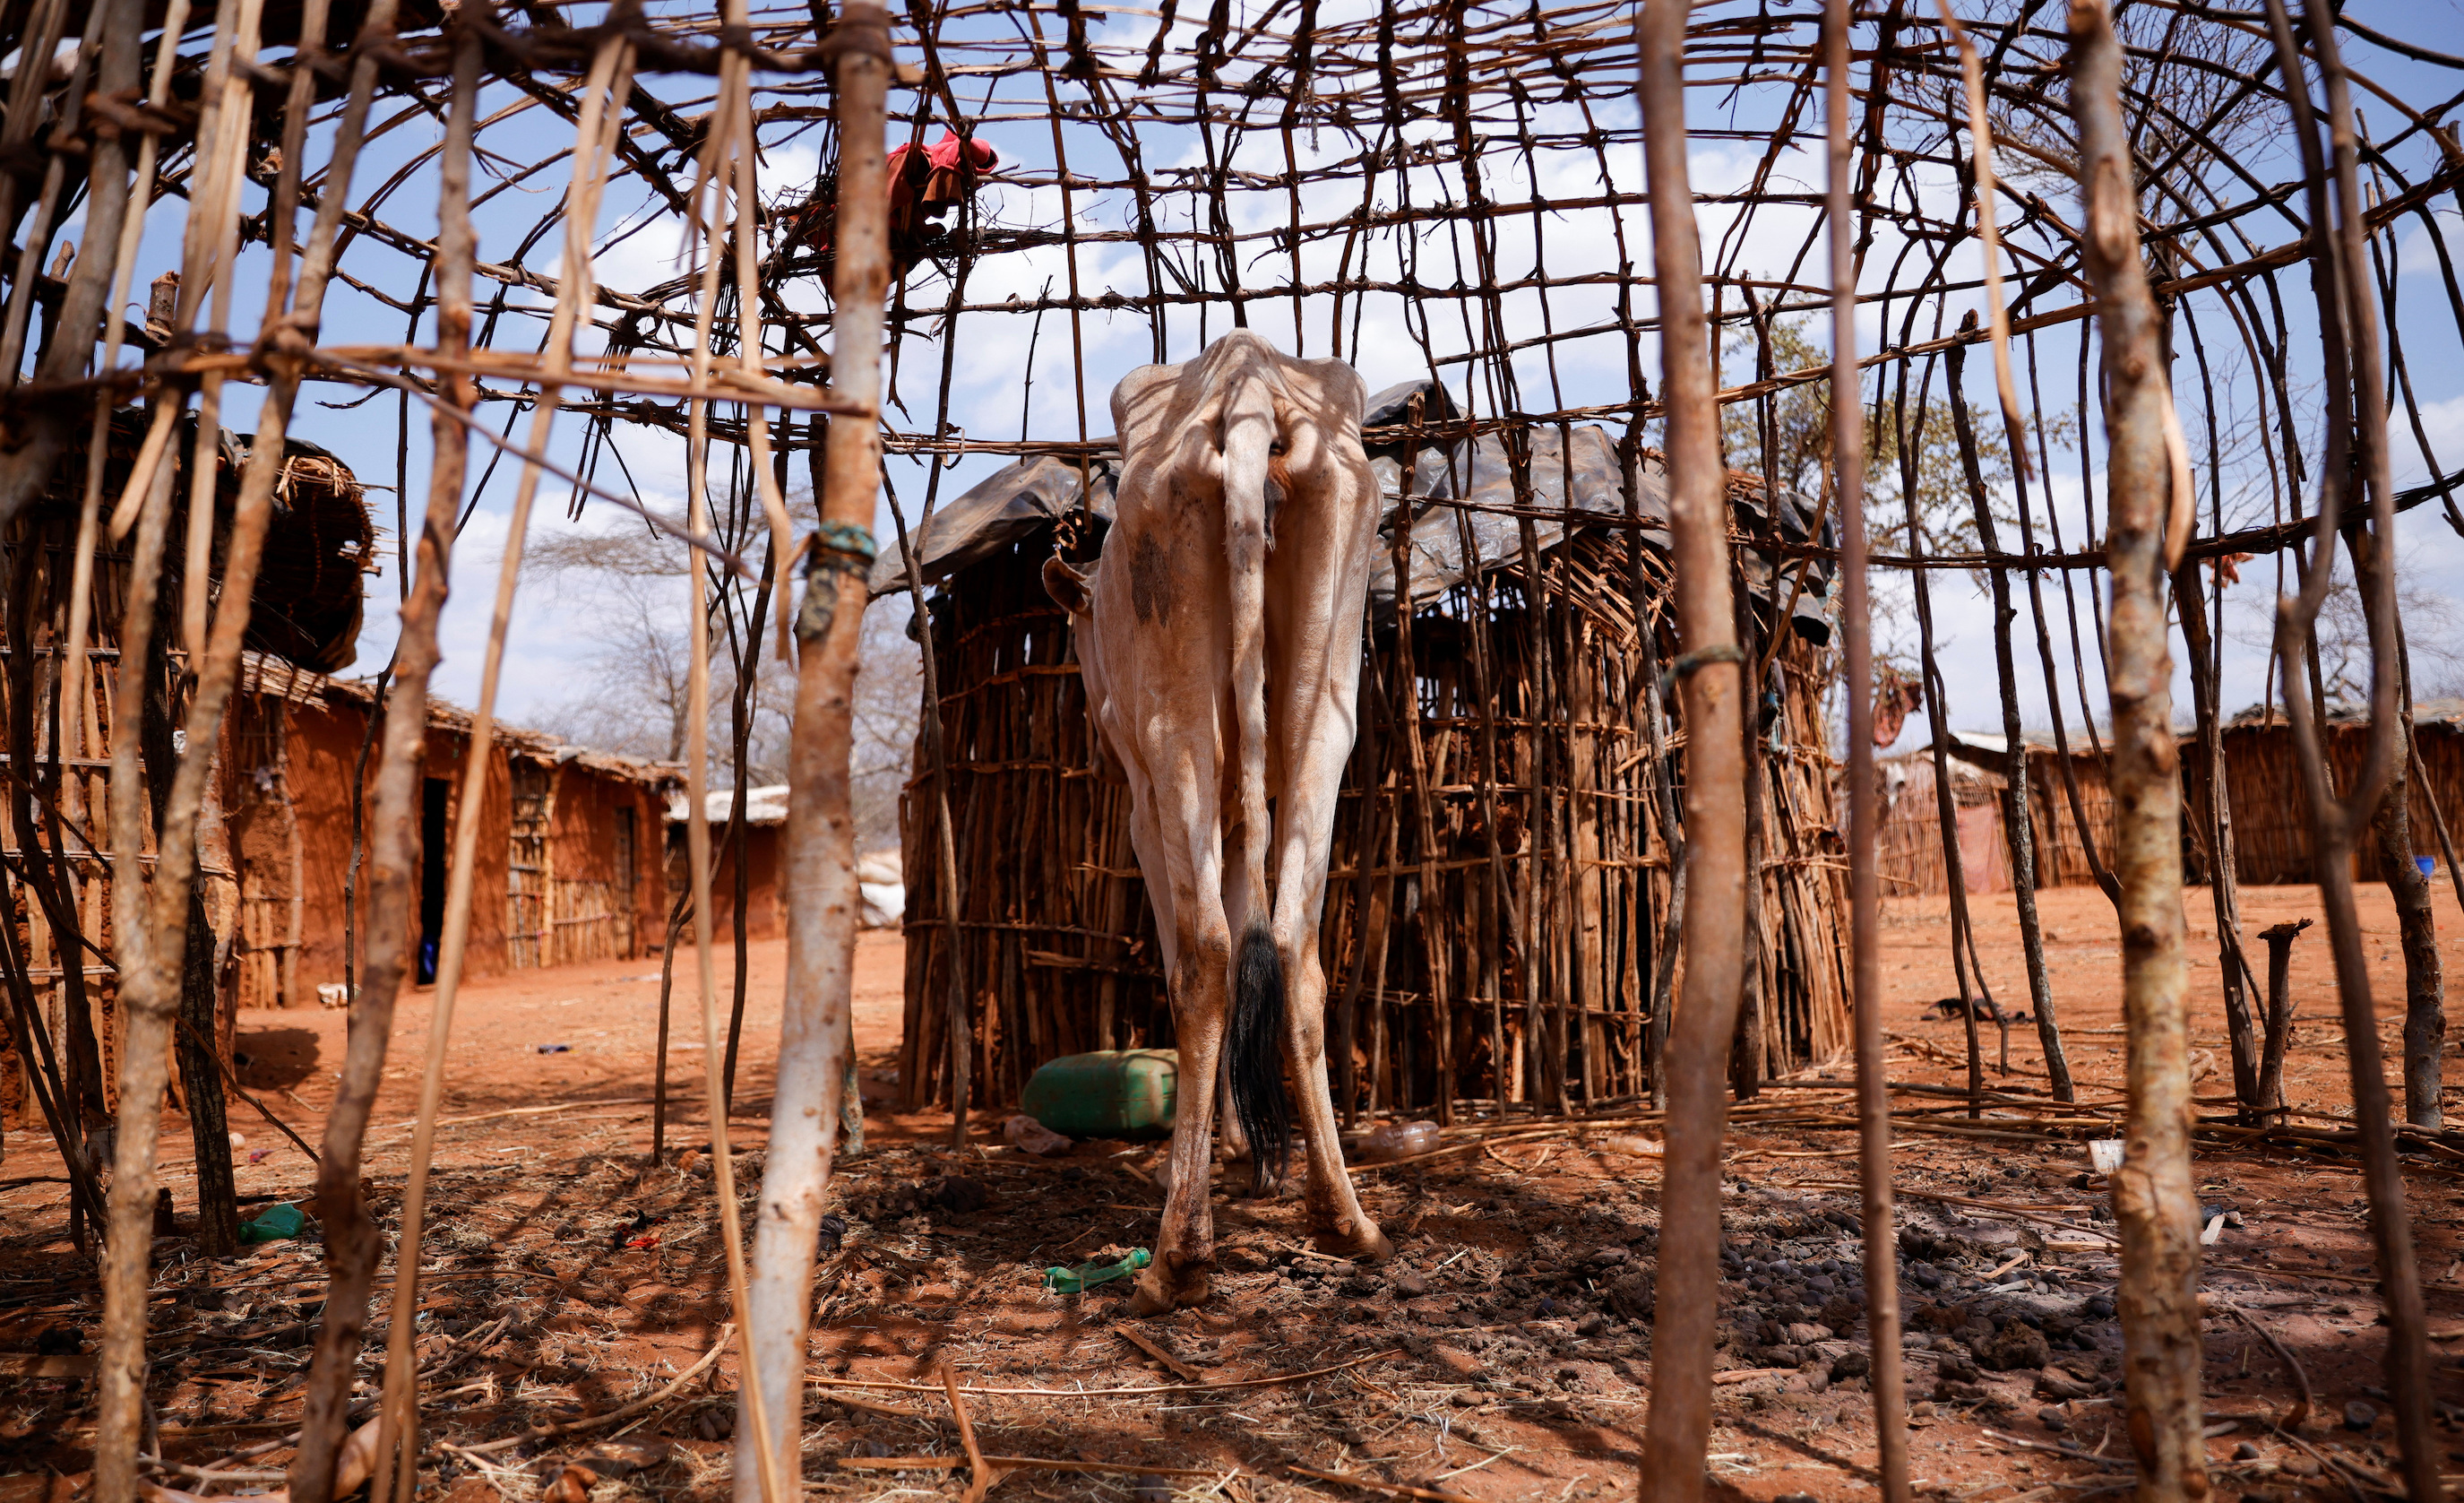 Drought threatens residents of Ethiopia’s Oromia, kills livestock